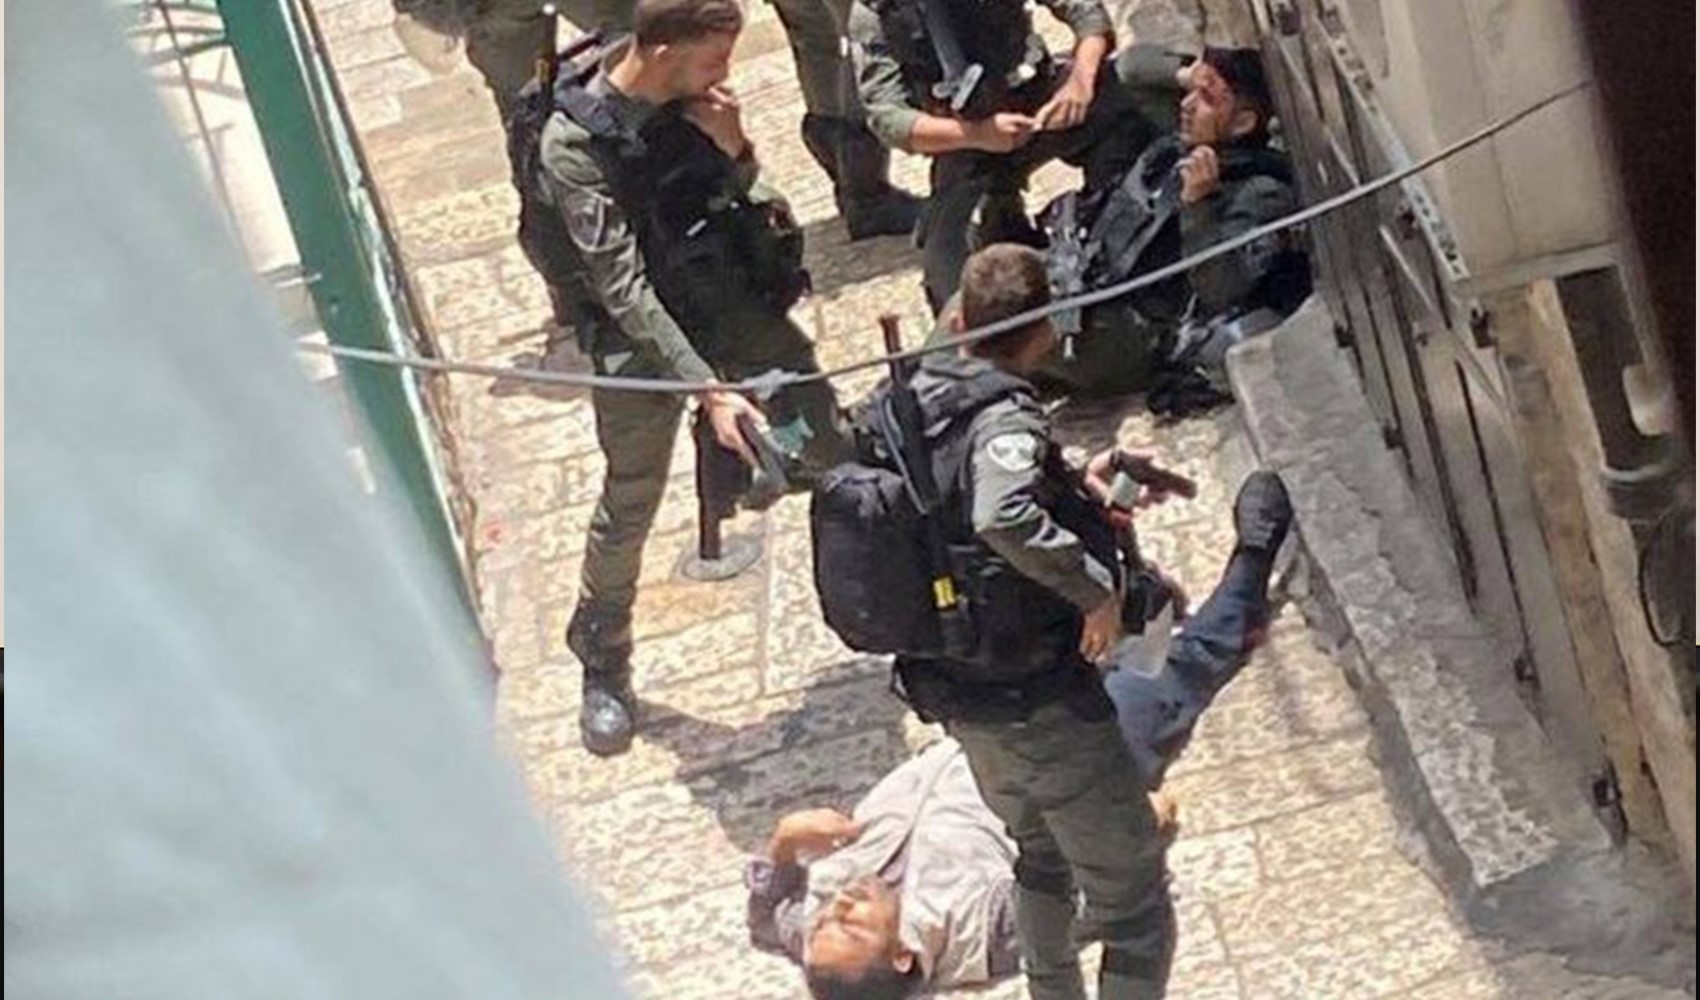 Kudüs'te İsrail polisi, Türk yurttaş tarafından bıçaklandı: Turist olarak gitmişti